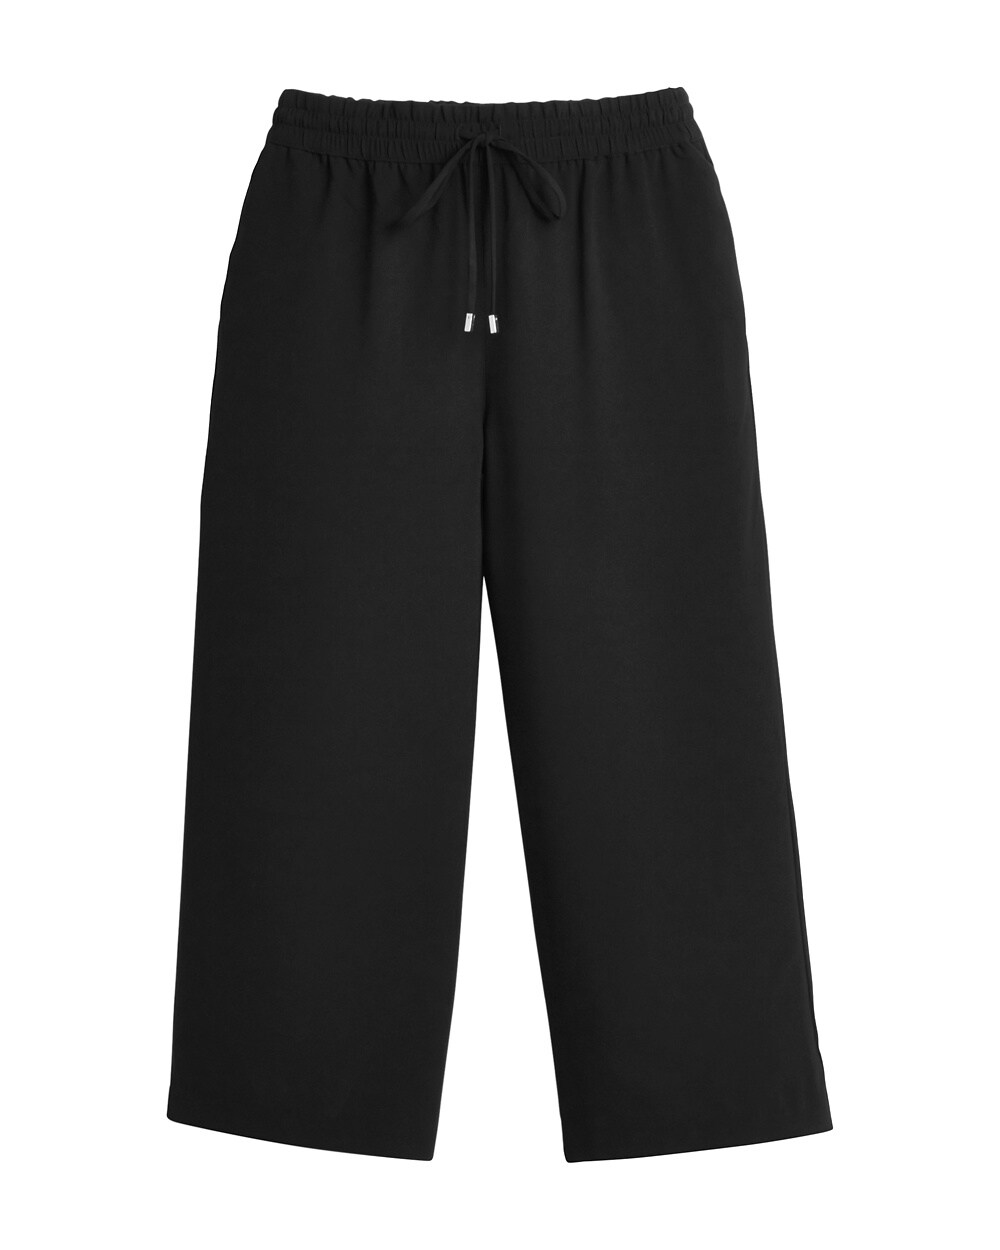 Black Label Crop Trouser Pants - Black Label Collection - Women's ...